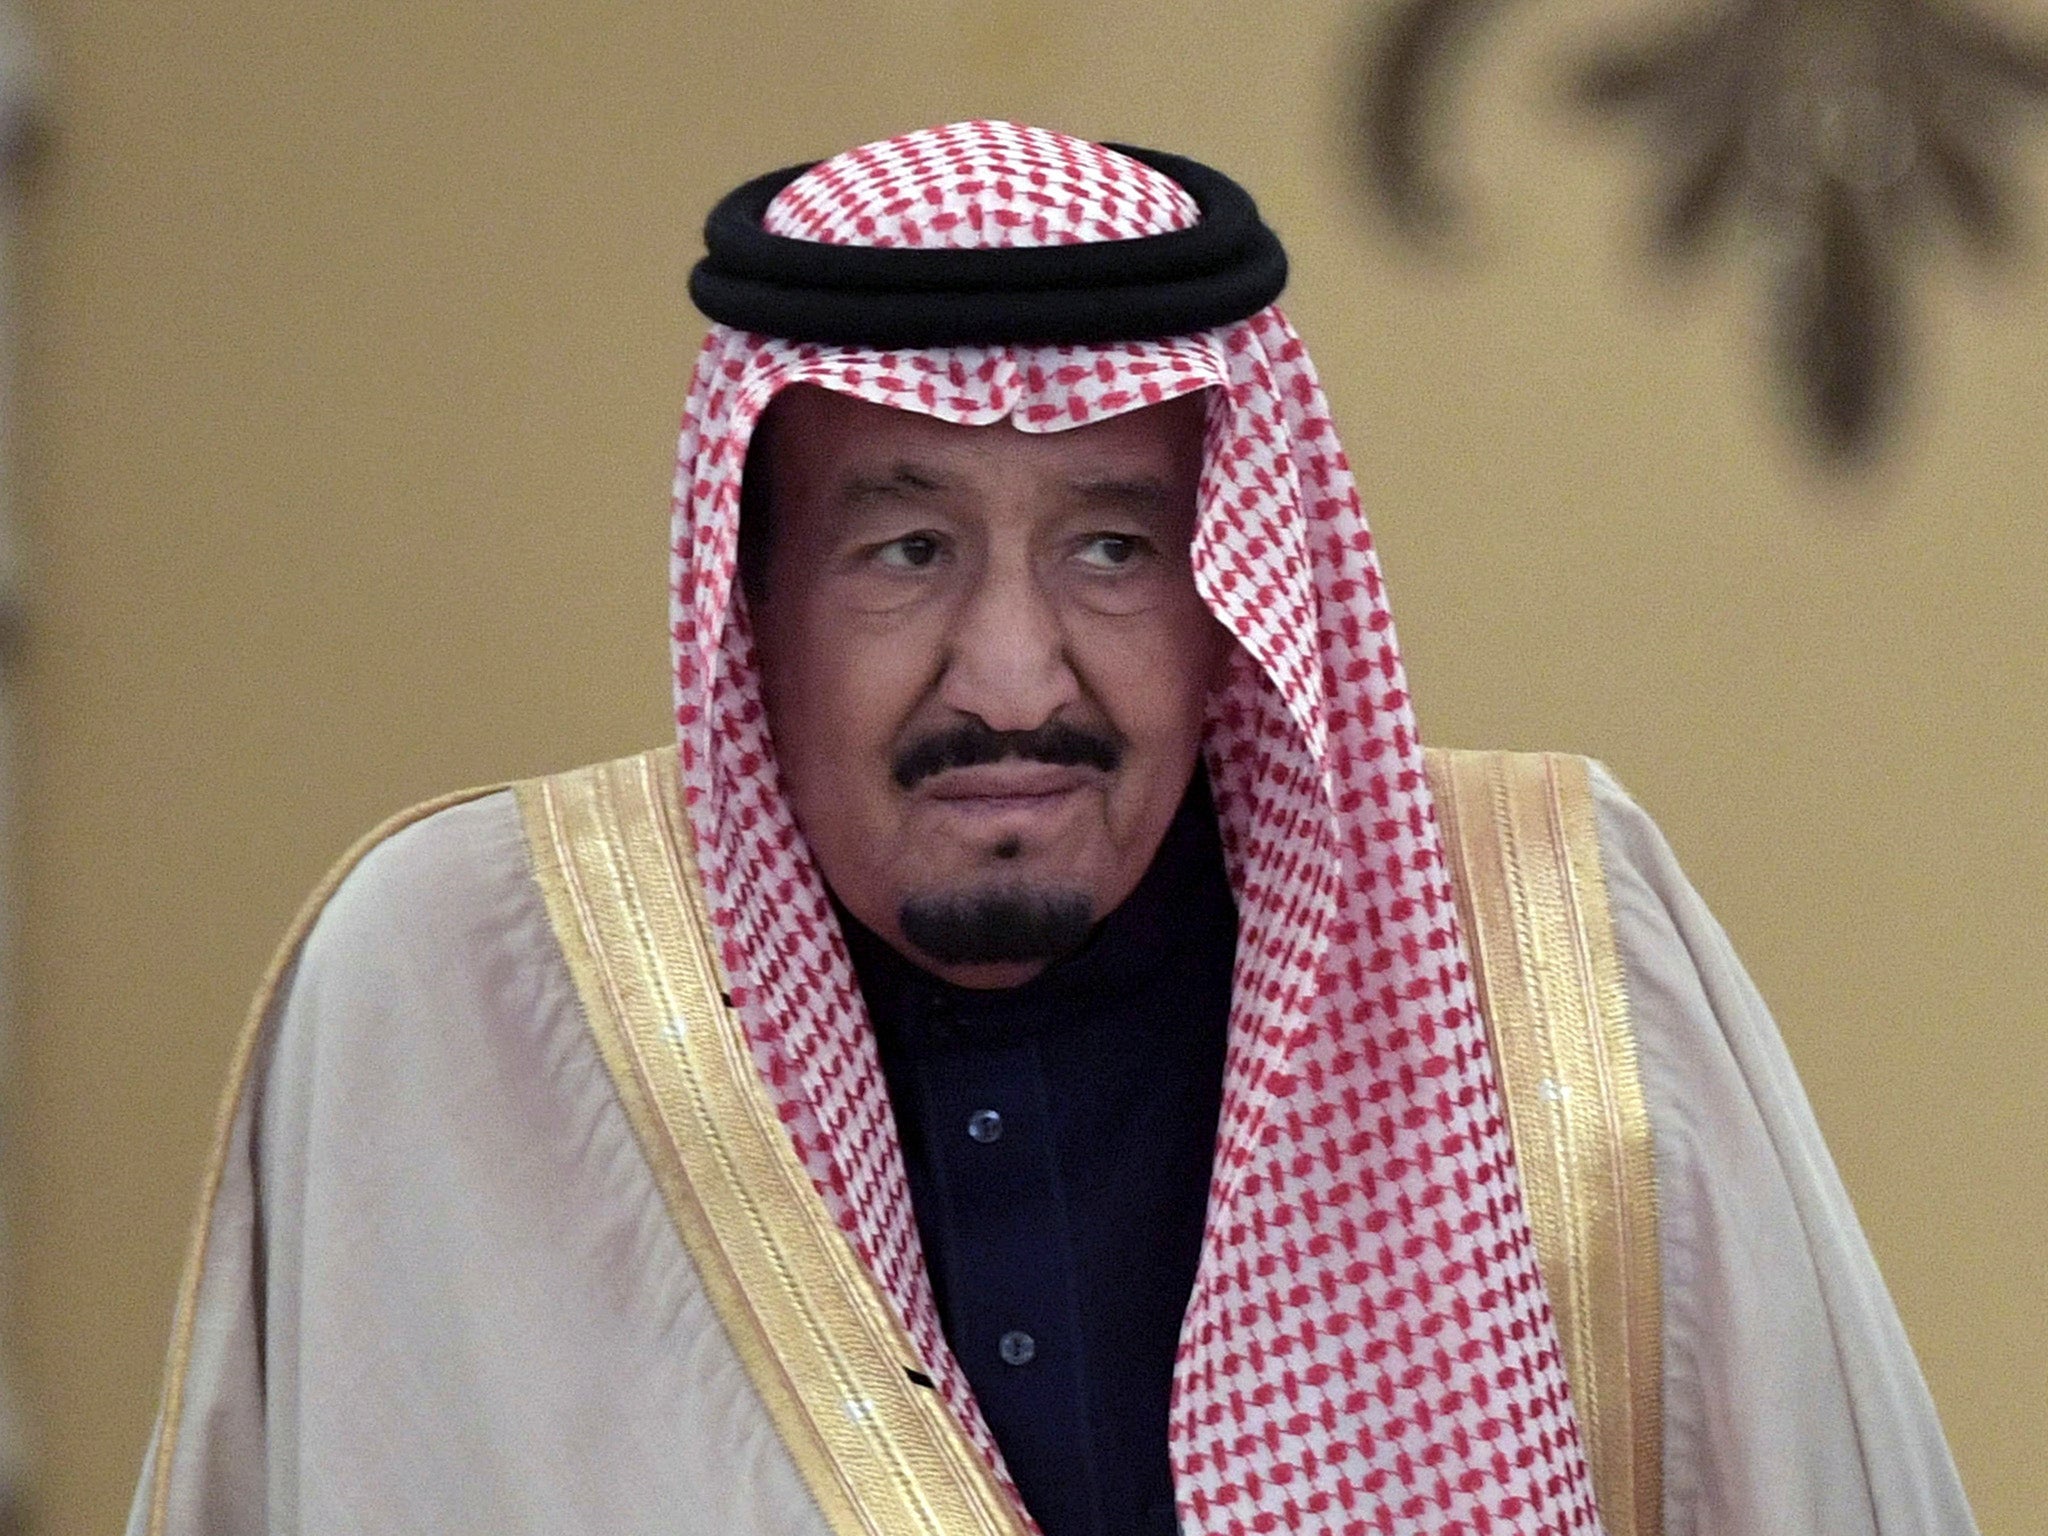 Saudi Arabia's King Salman